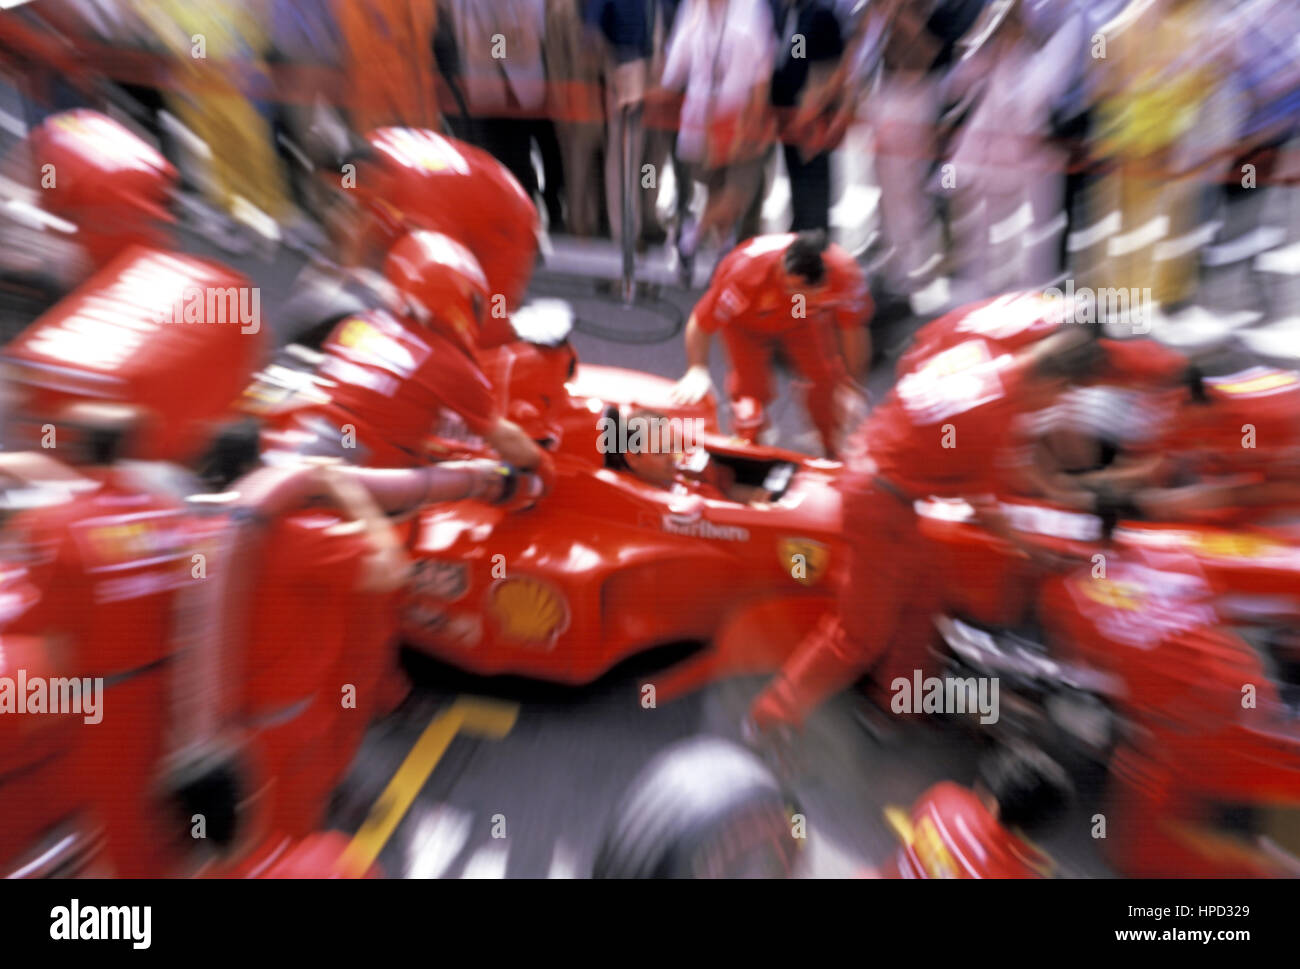 1999 Ferrari F399 Practice pitstop Stock Photo